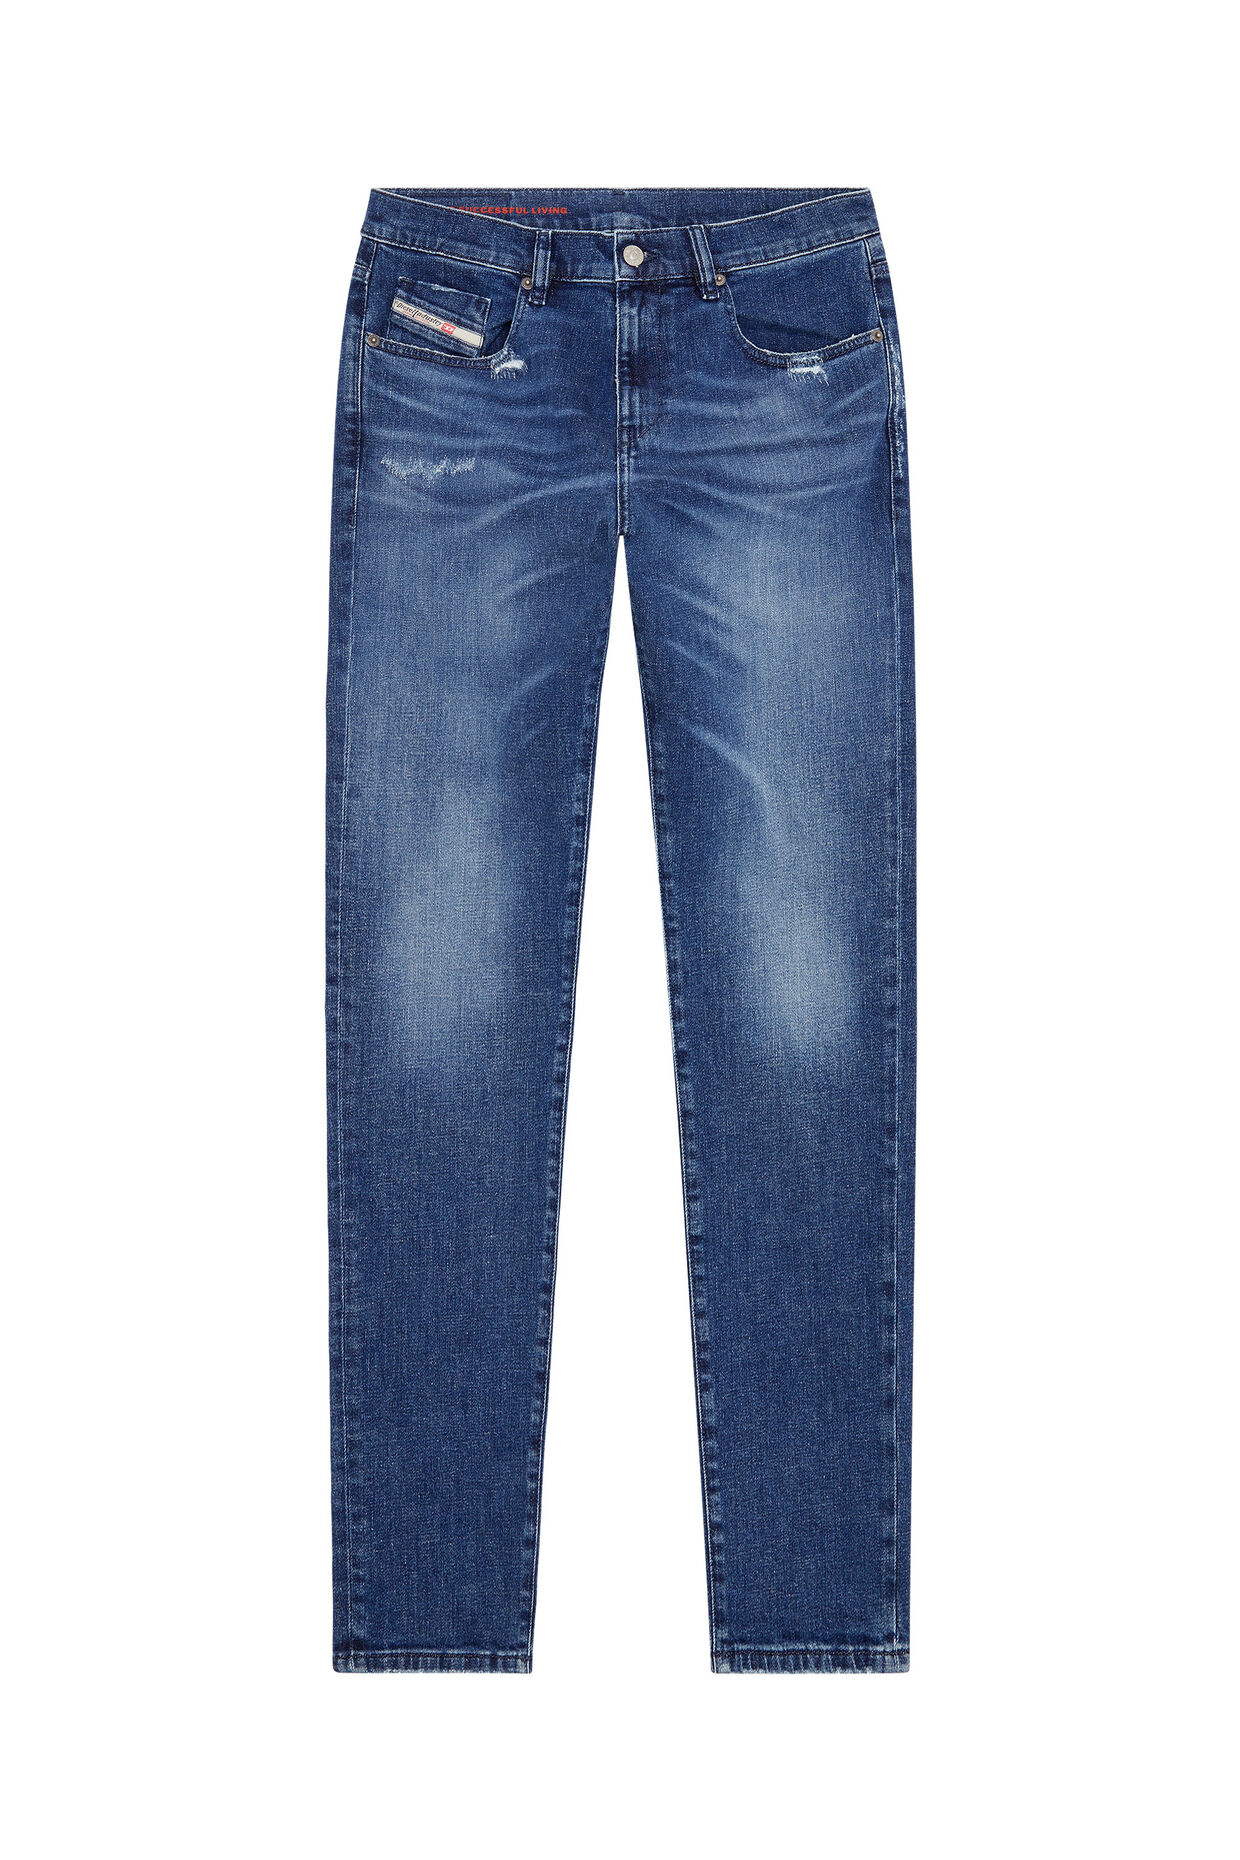 diesel.com | 2019 D-Strukt 09f55 Slim Jeans